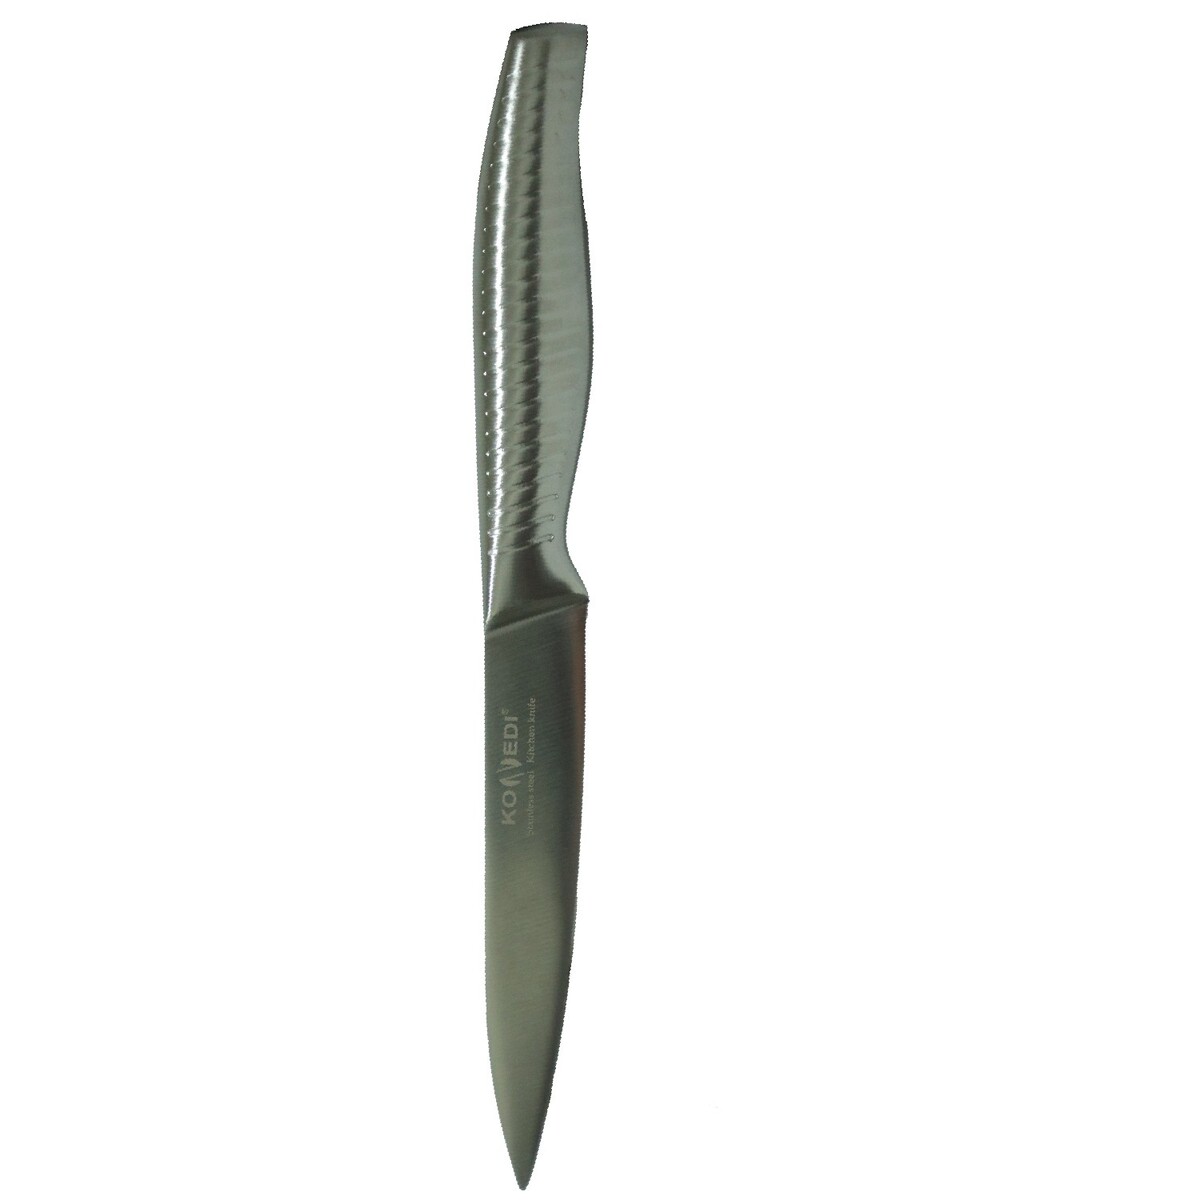 Home Knife K6-S138